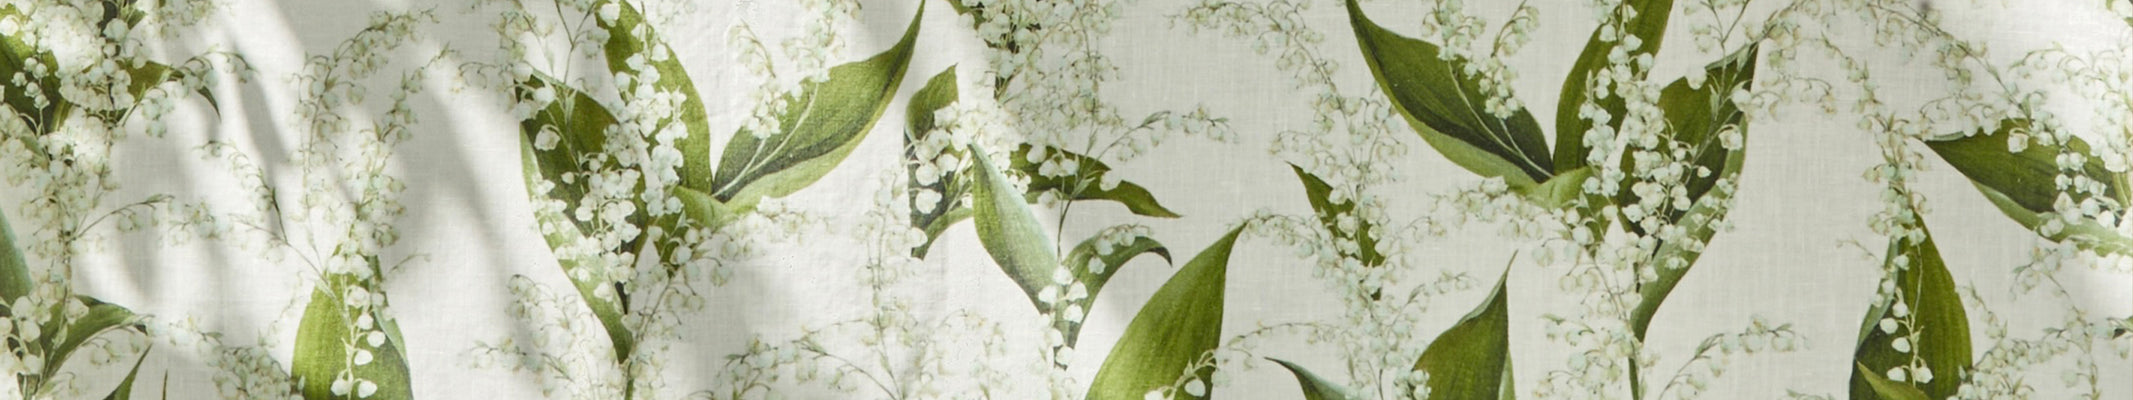 floral table linen